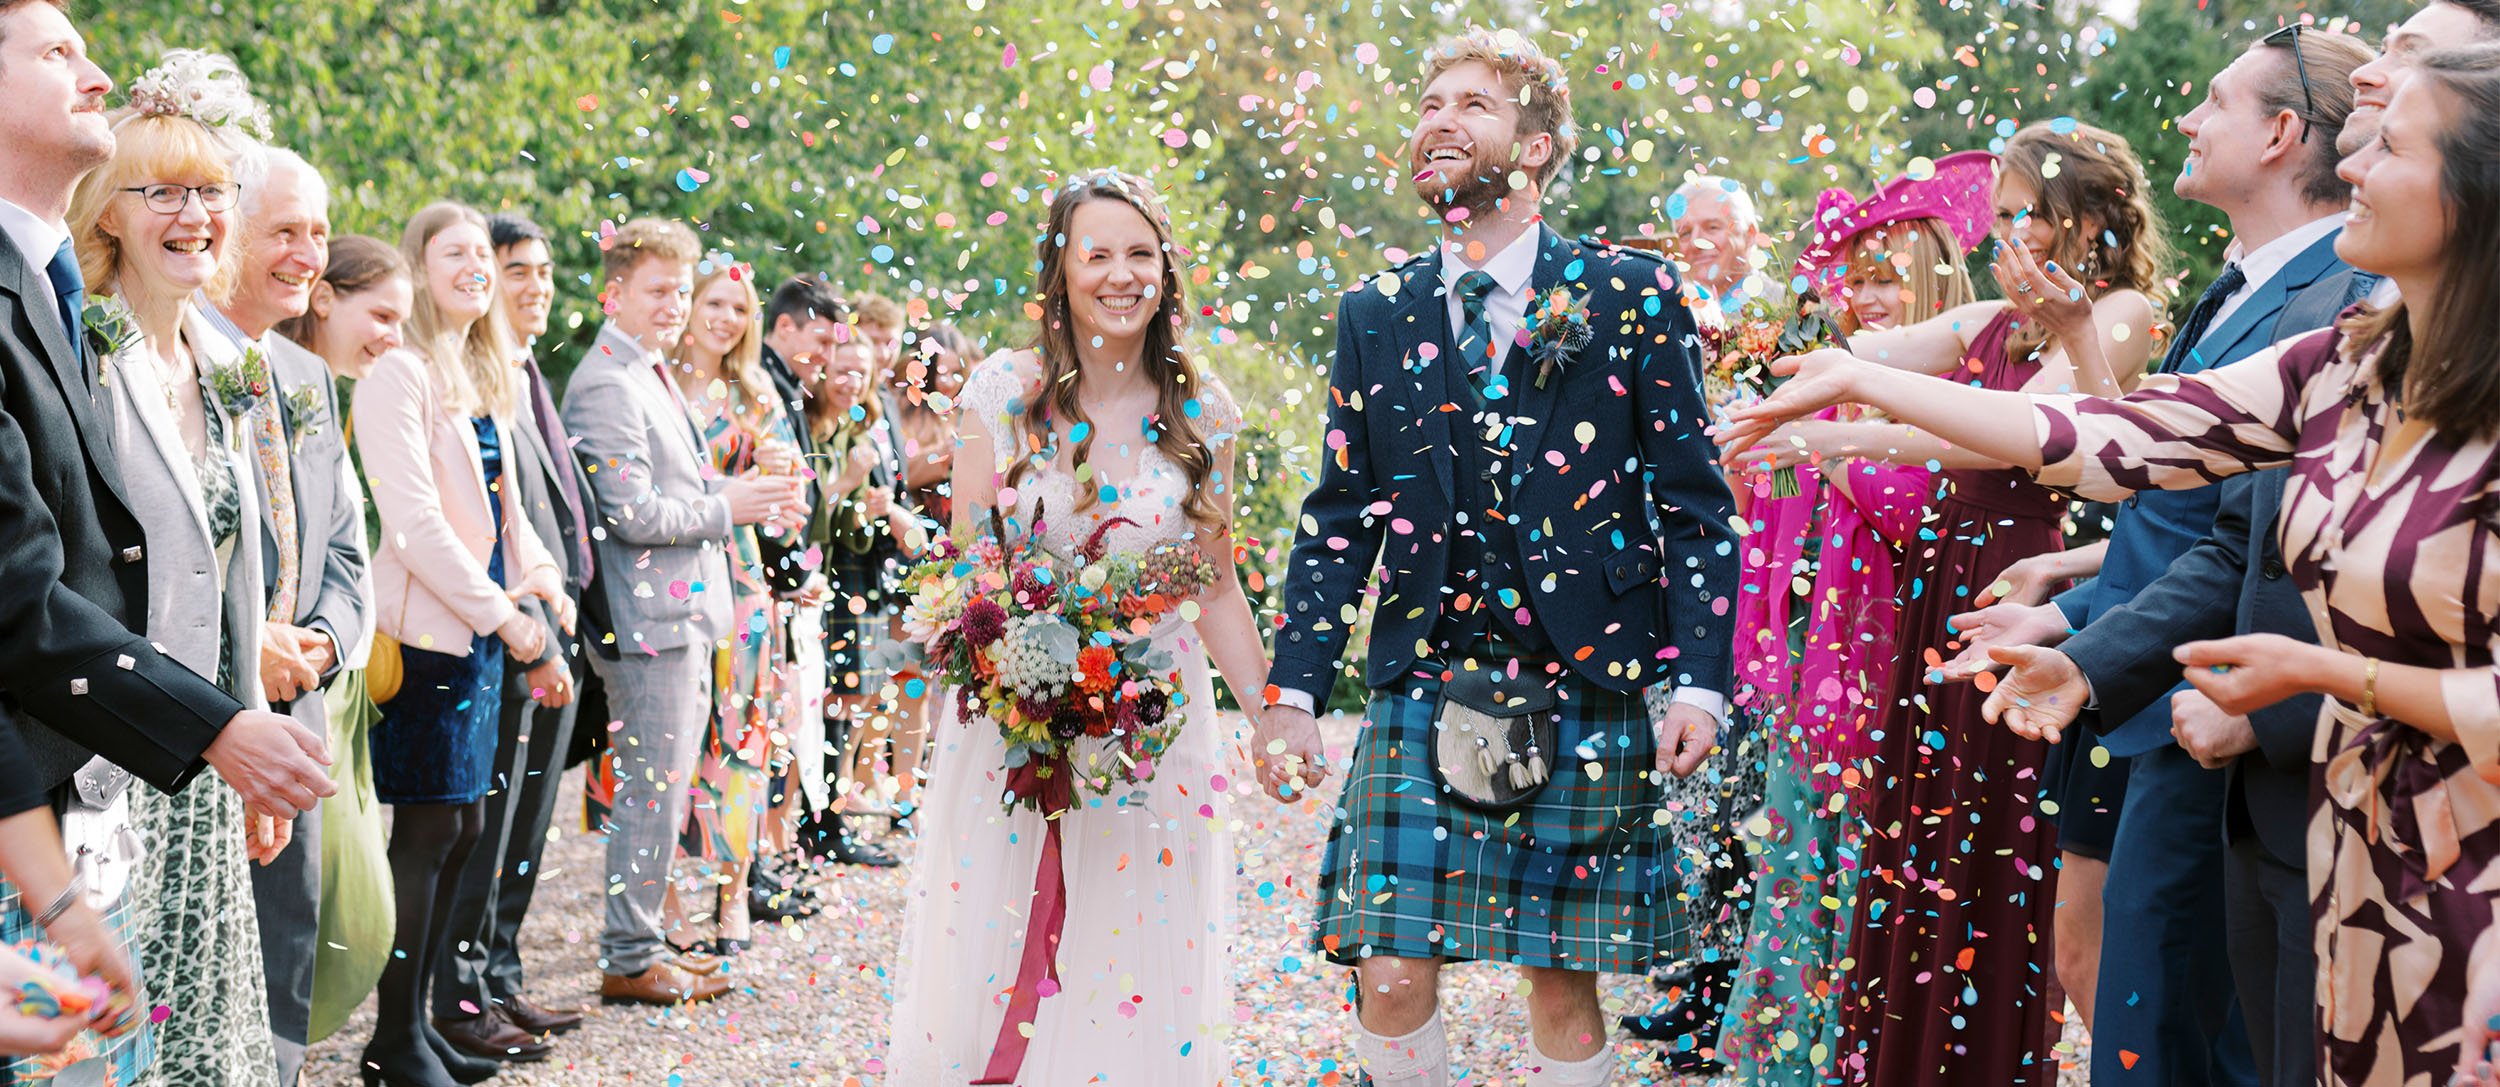 1d-fine-art-light-airy-wedding-photographer-scotland-uk.jpeg